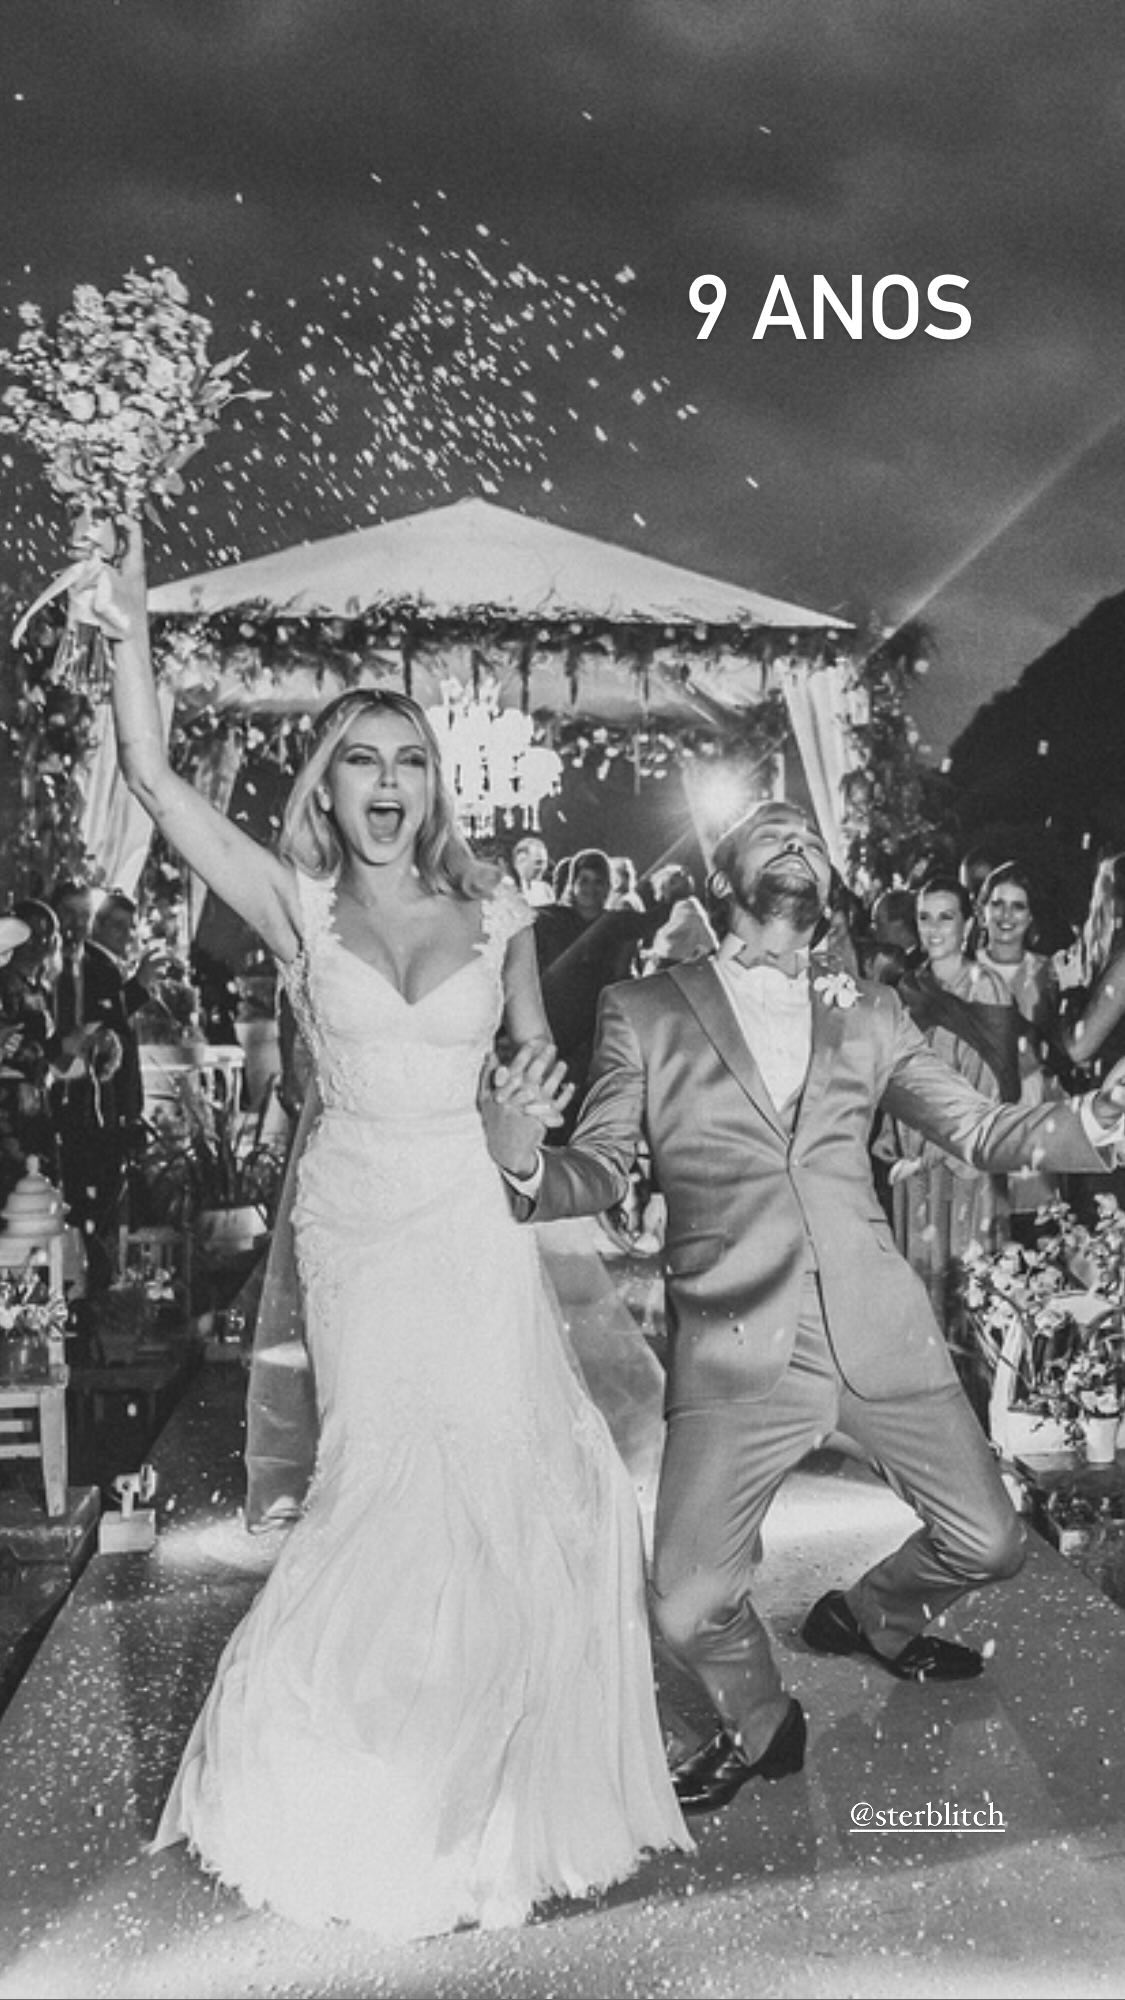 Louise D' Tuani e Eduardo Sterblitch se casaram há nove anos Reprodução/Instagram